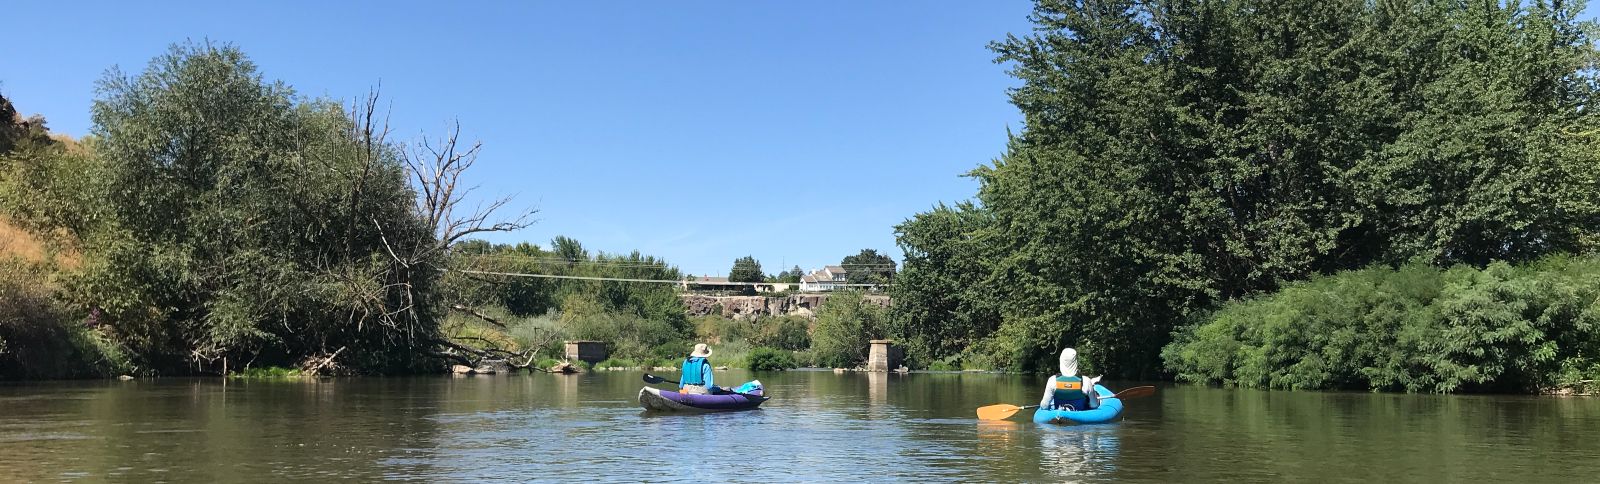 kayaks floating